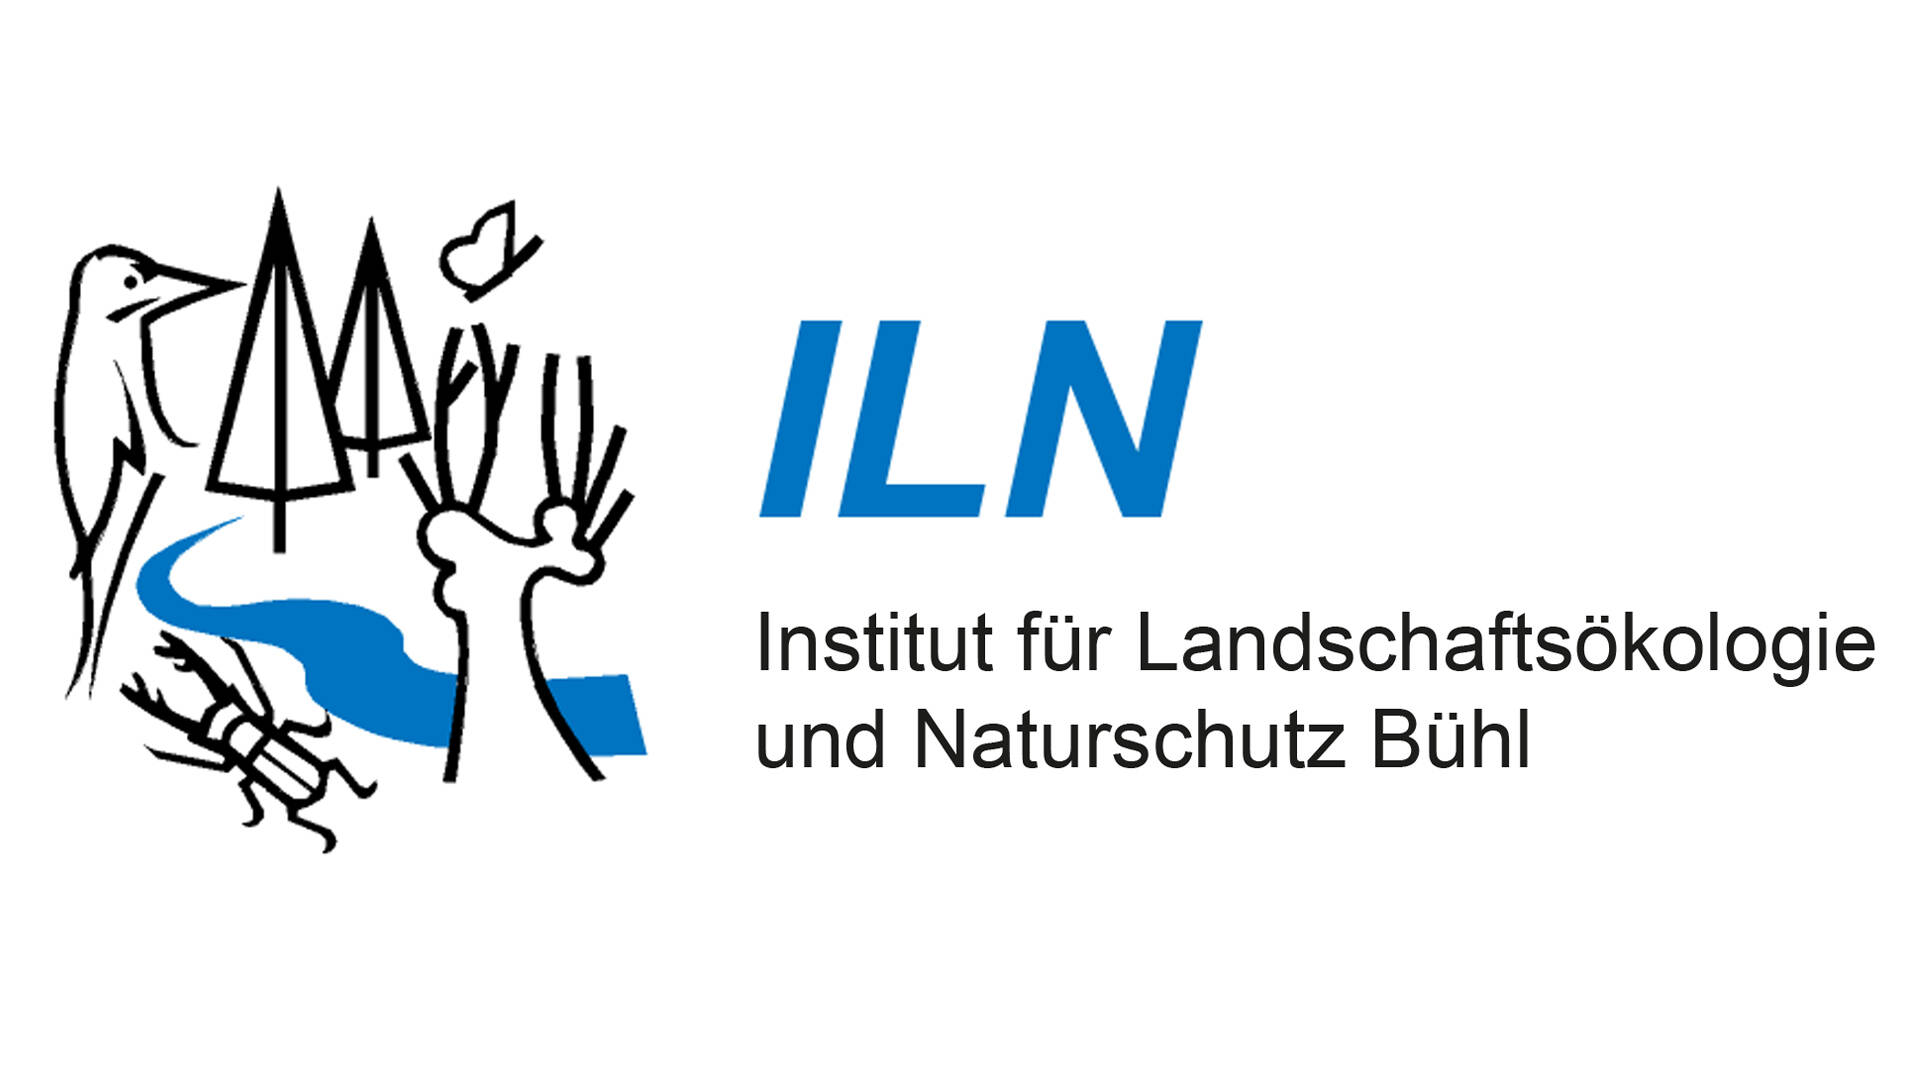 ILN - Institut für Landschaftsökologie und Naturschutz Bühl